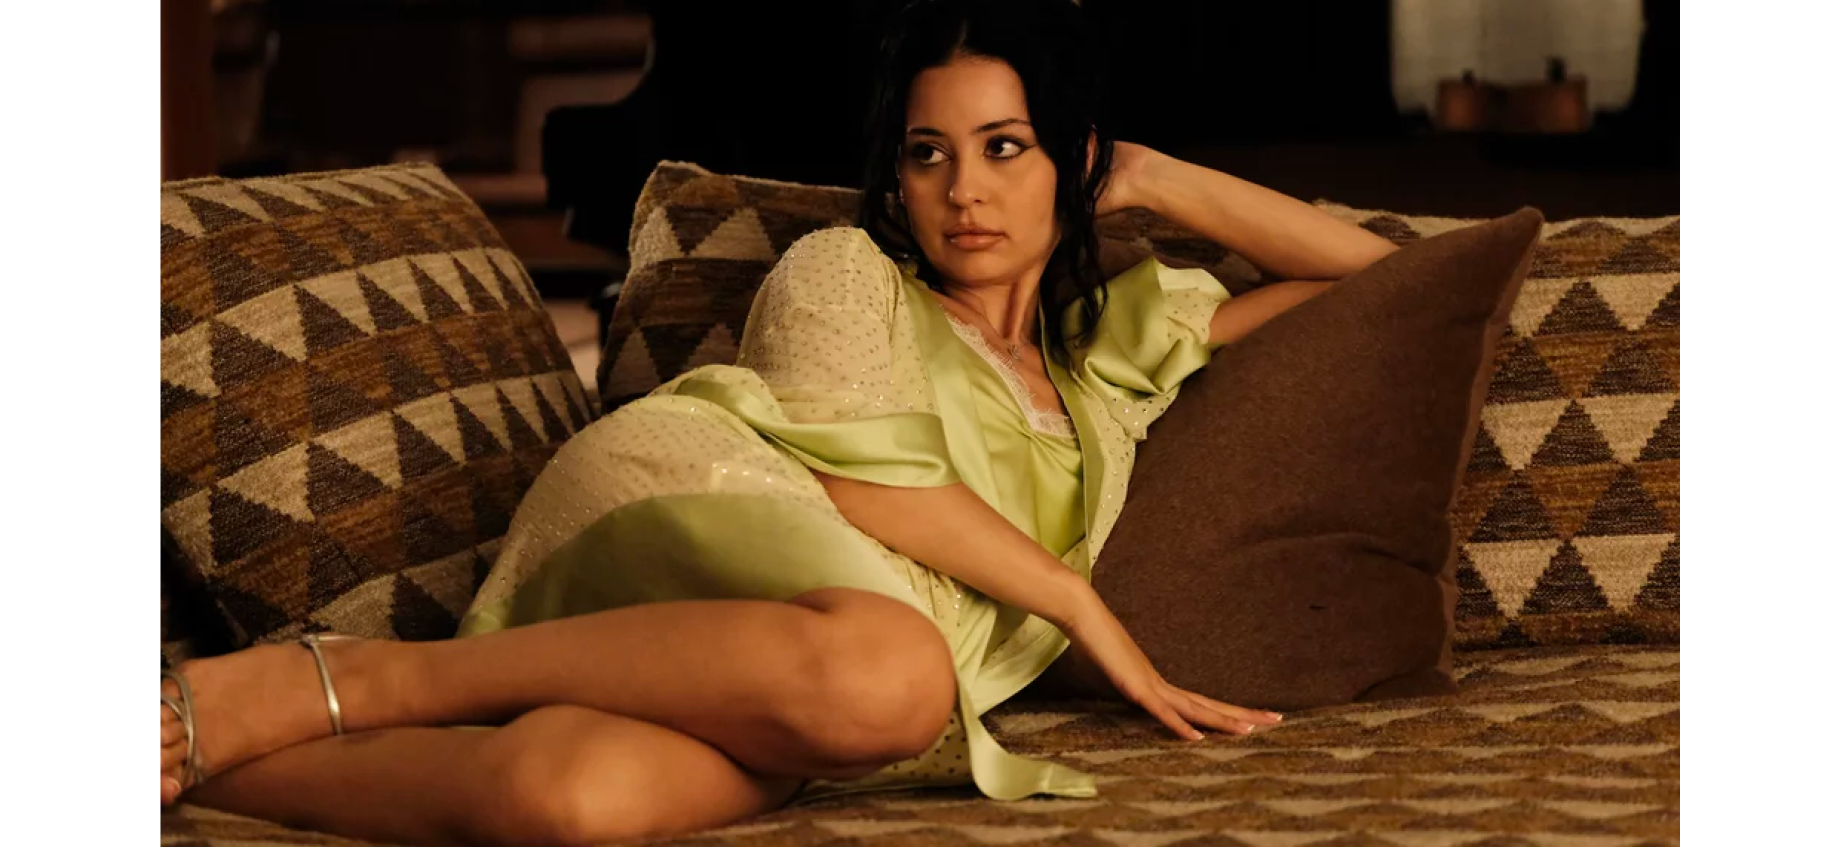 Maddy sur un canapé © HBO Euphoria 2